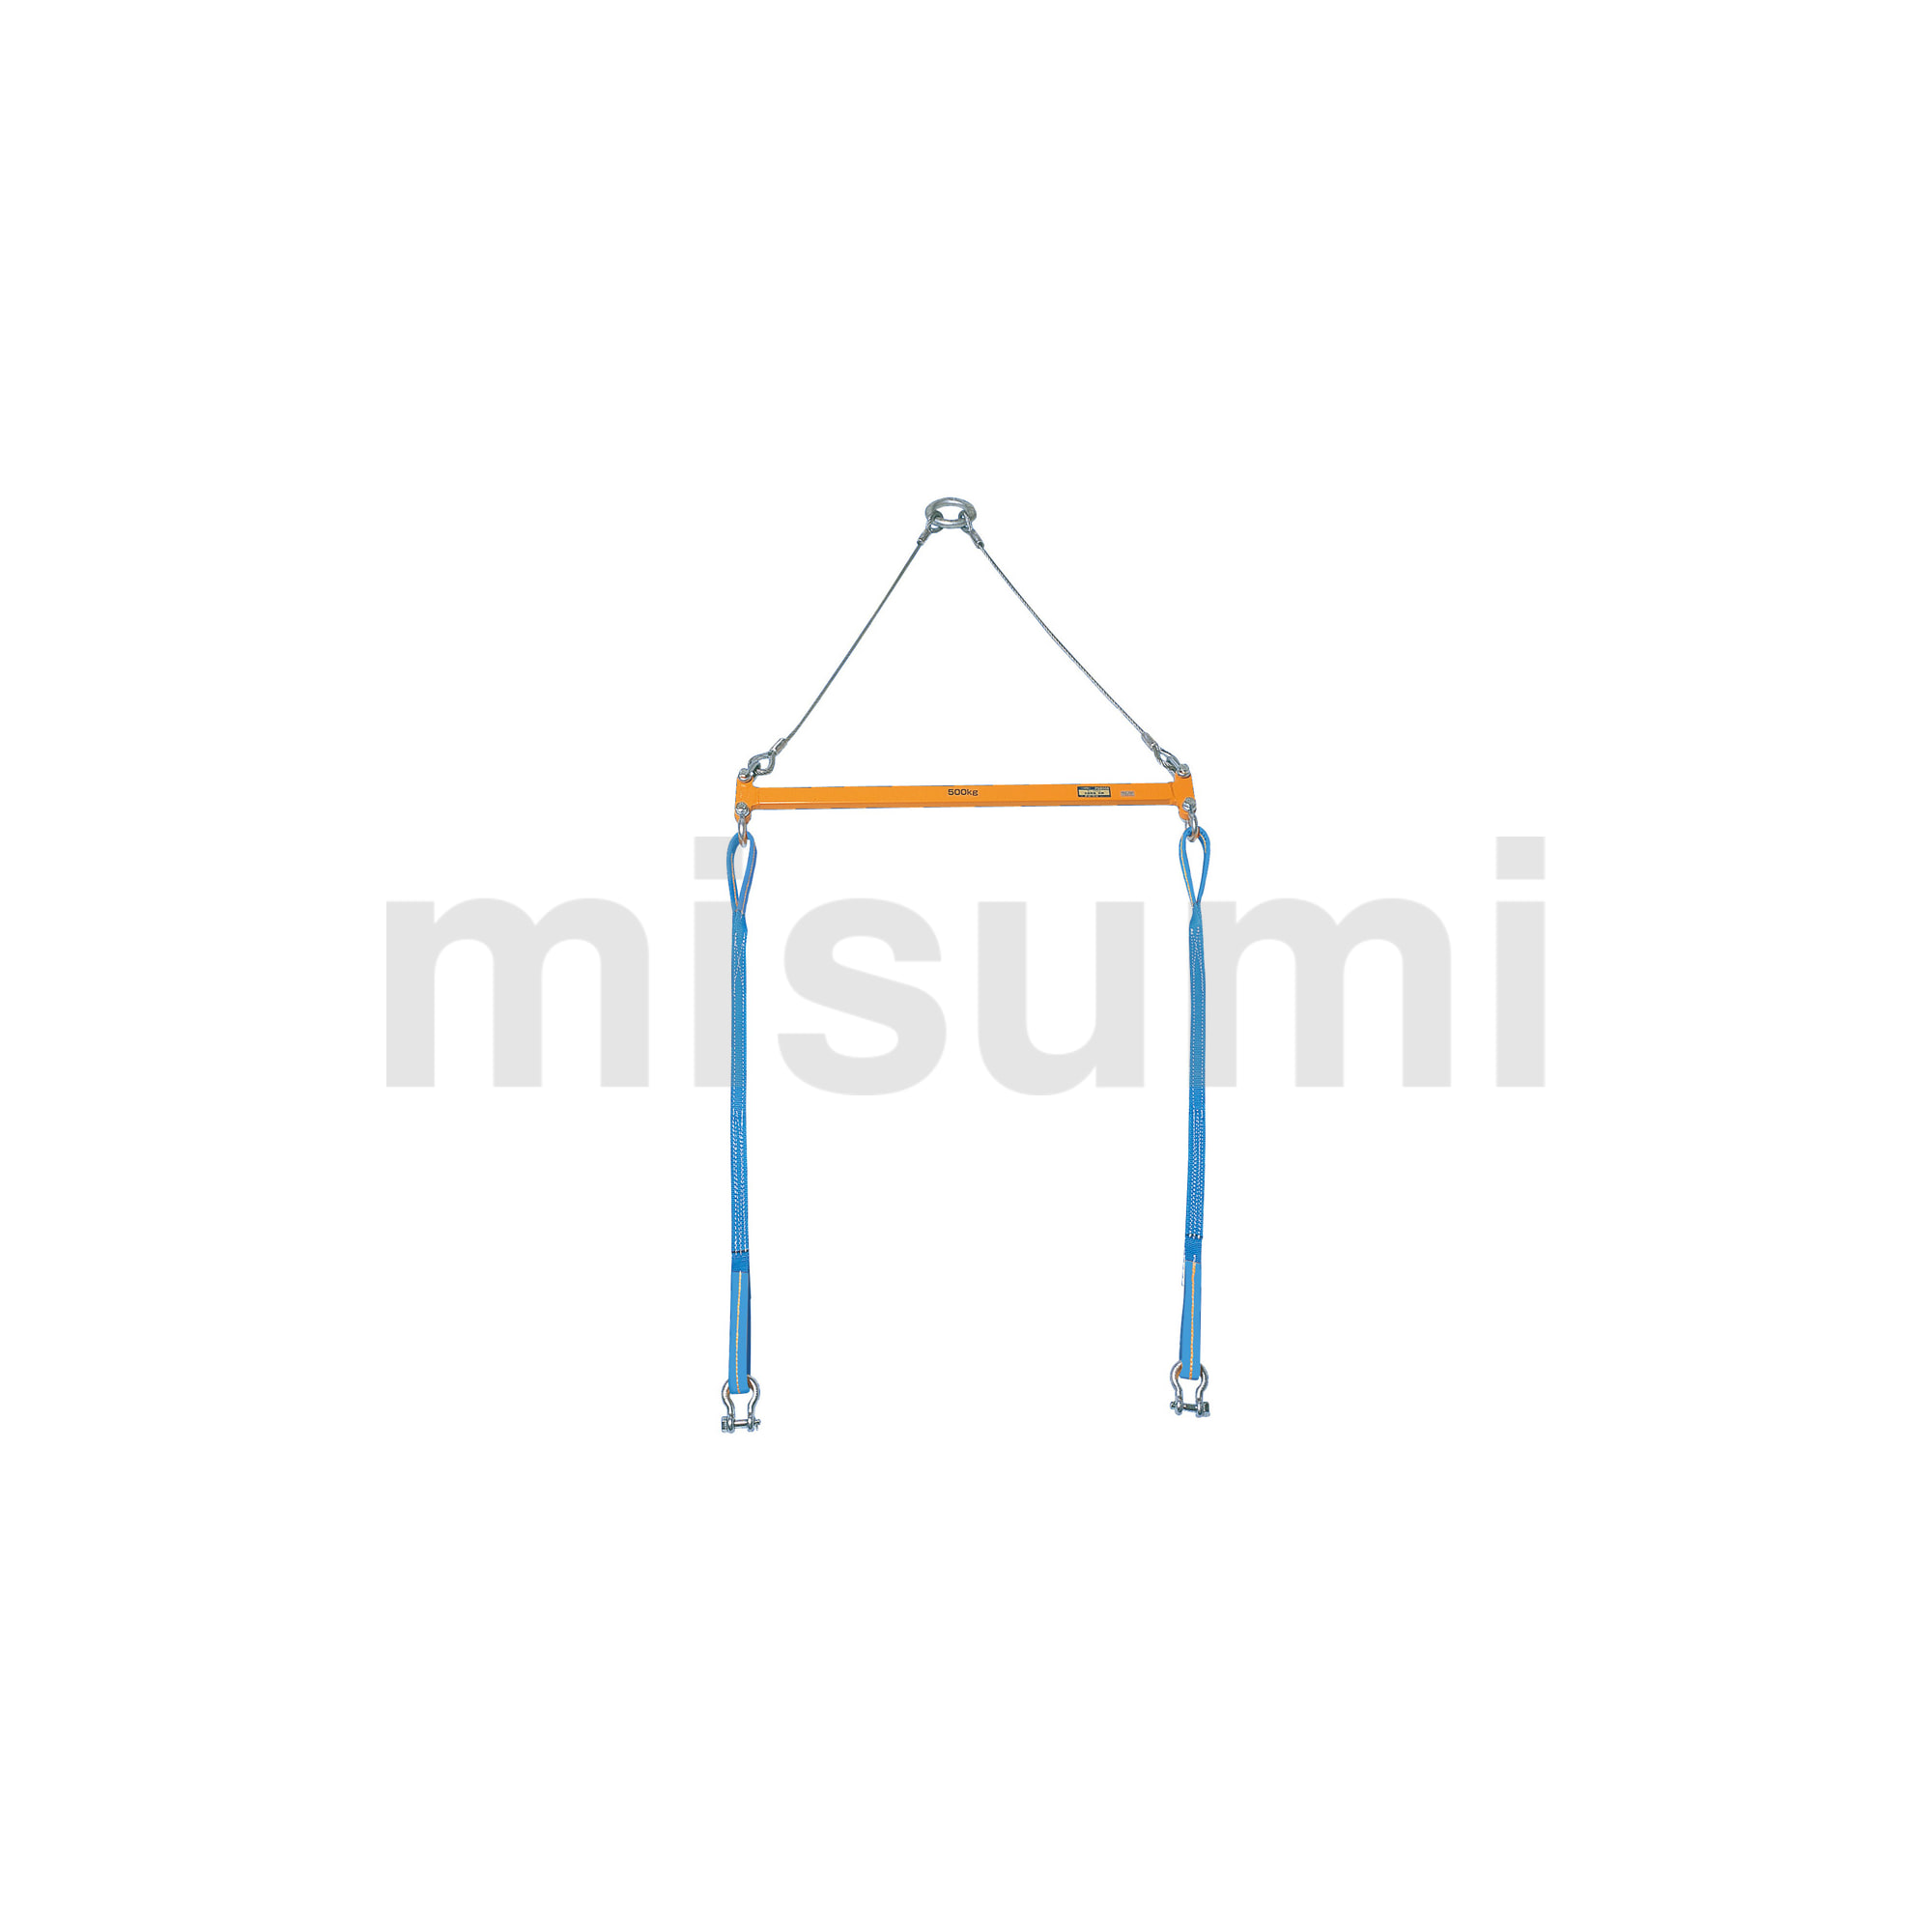 2点吊用天秤 | スーパーツール | MISUMI(ミスミ)